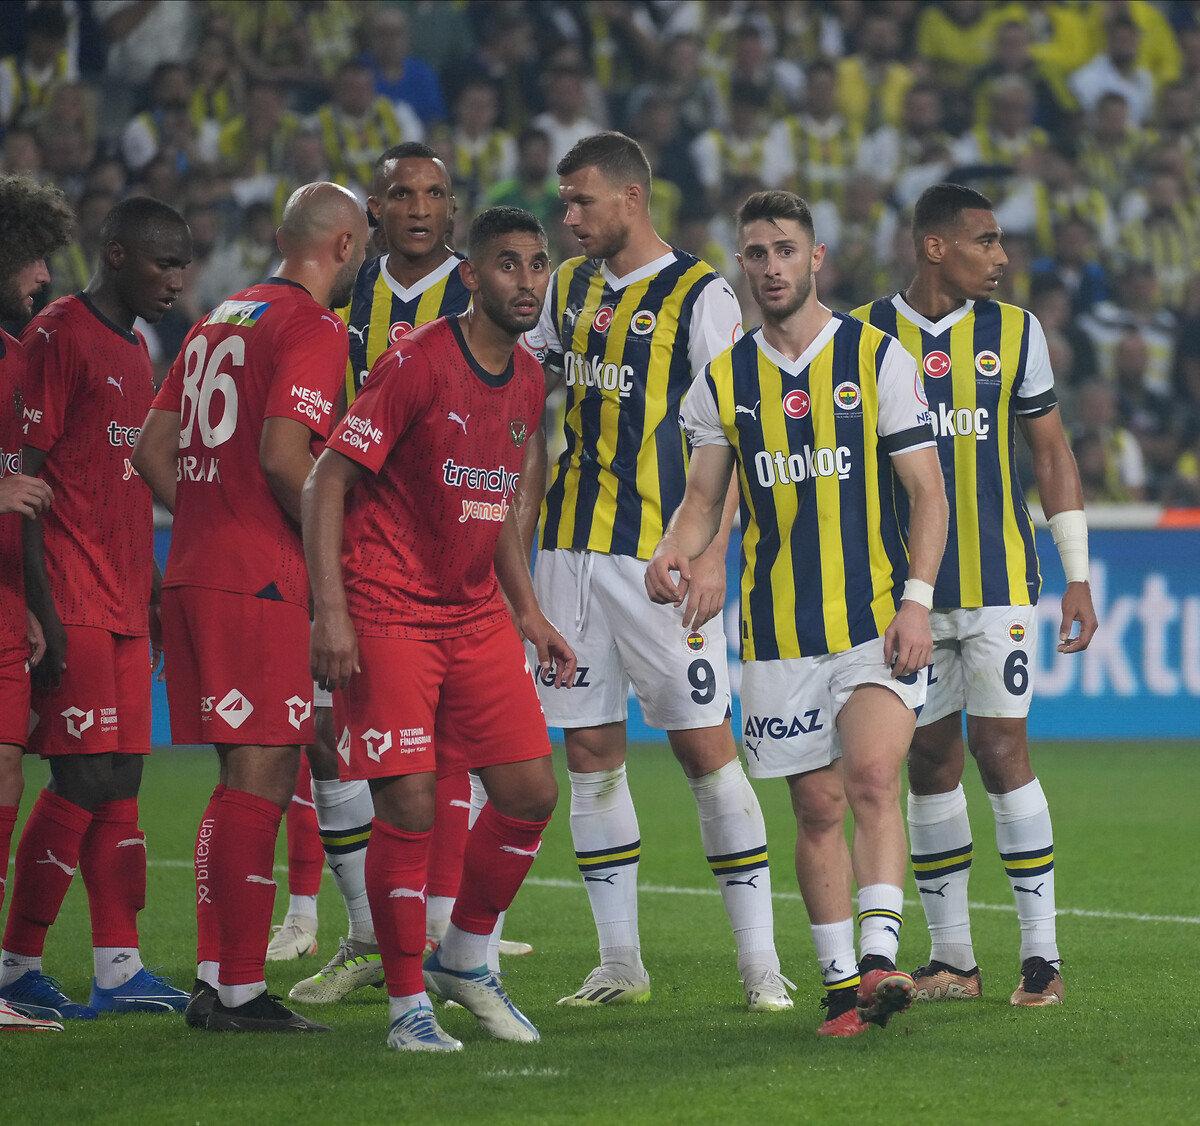 Fenerbahçe durdurulamıyor - Son Dakika Haberleri